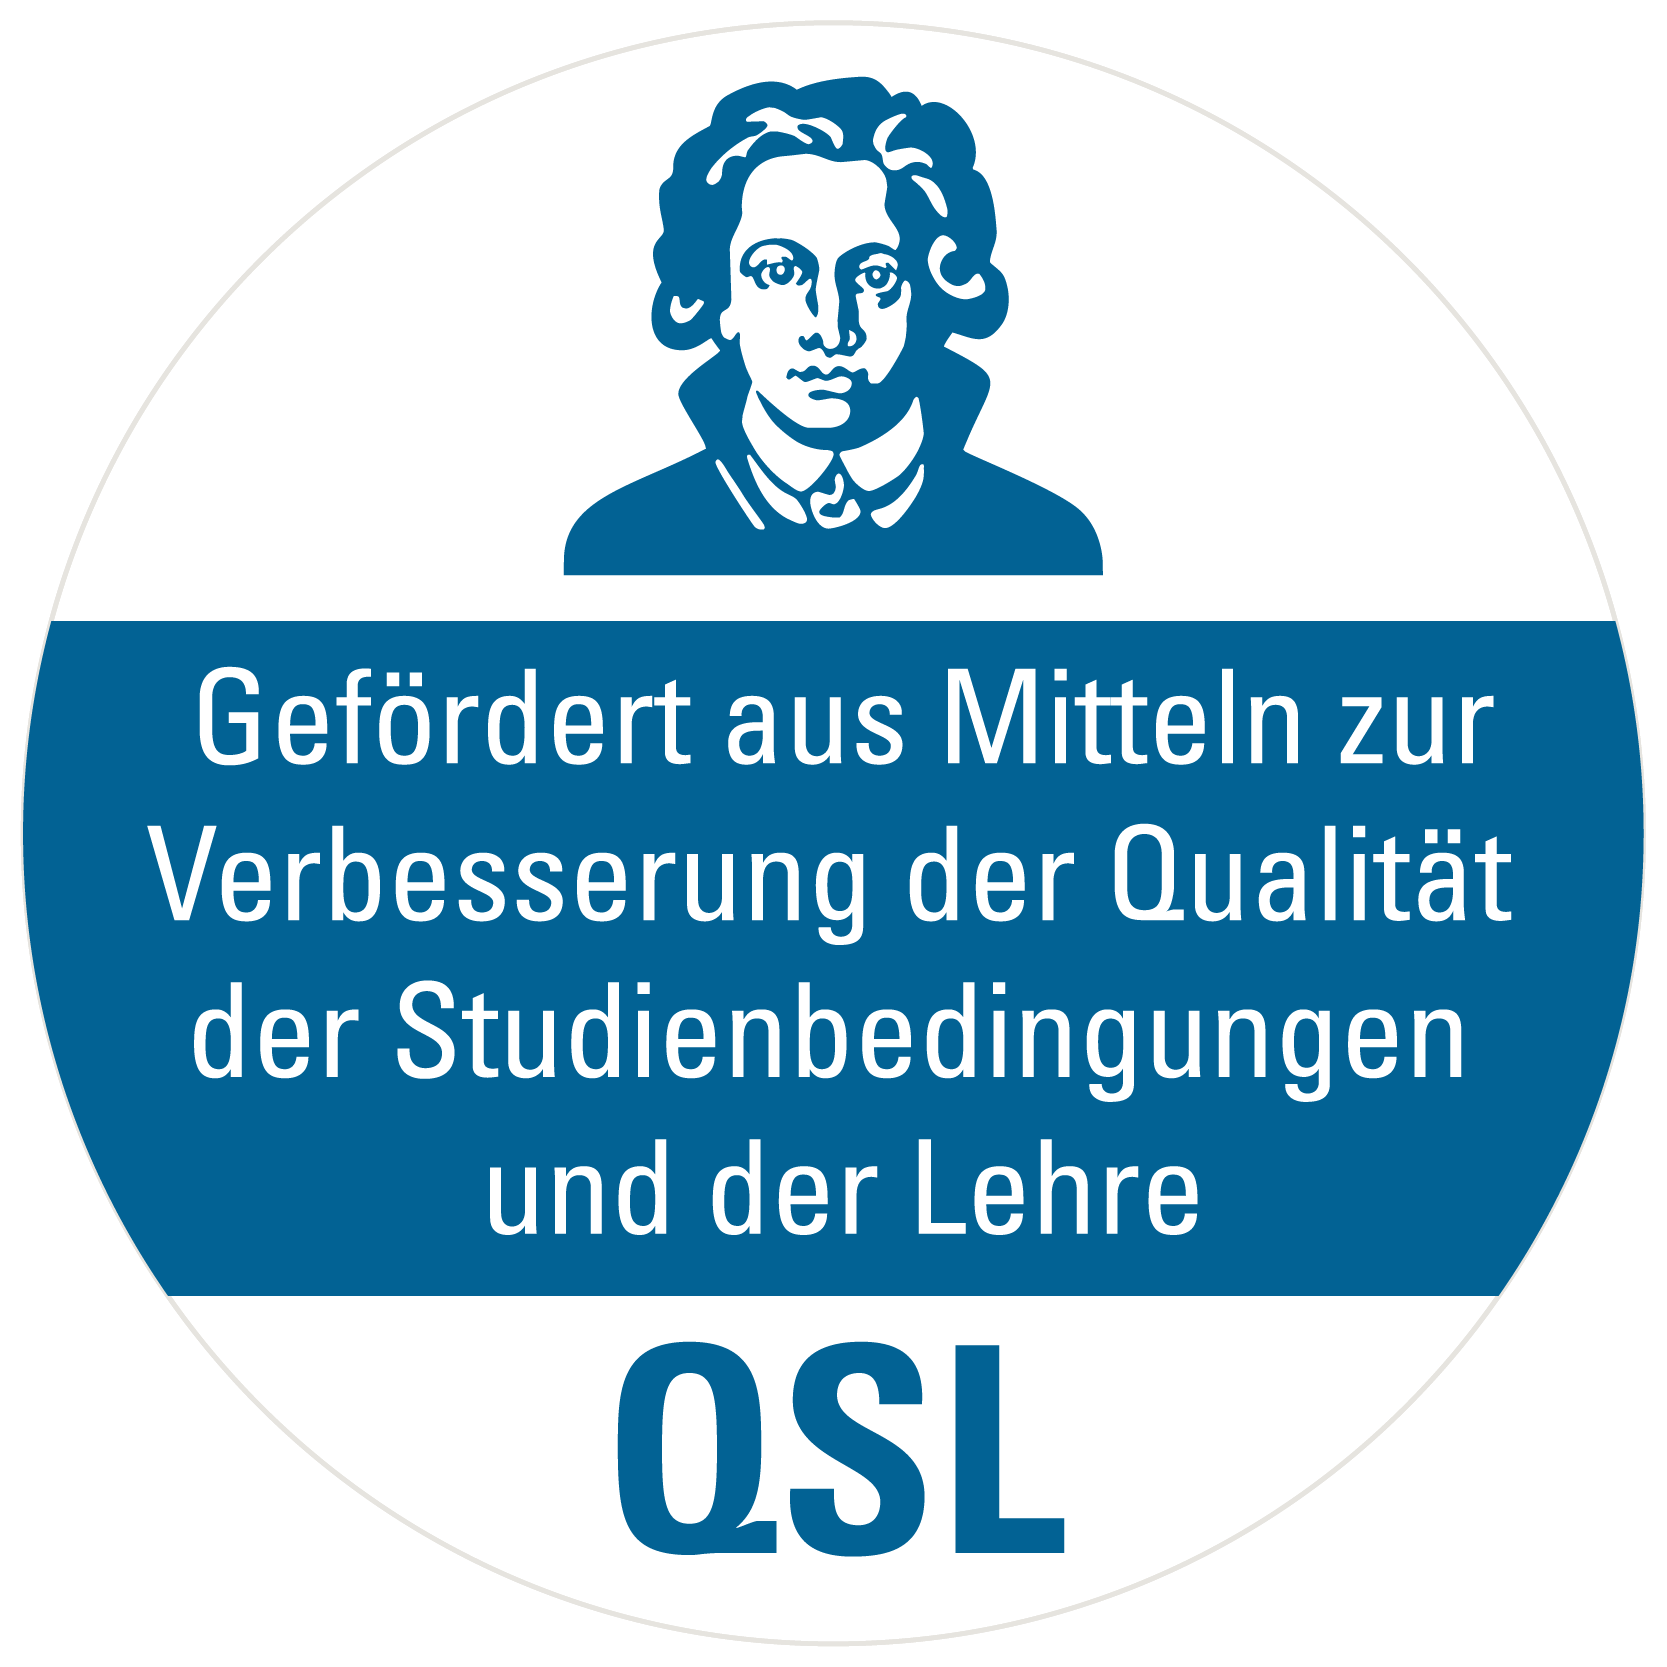 logo_qsl_rgb